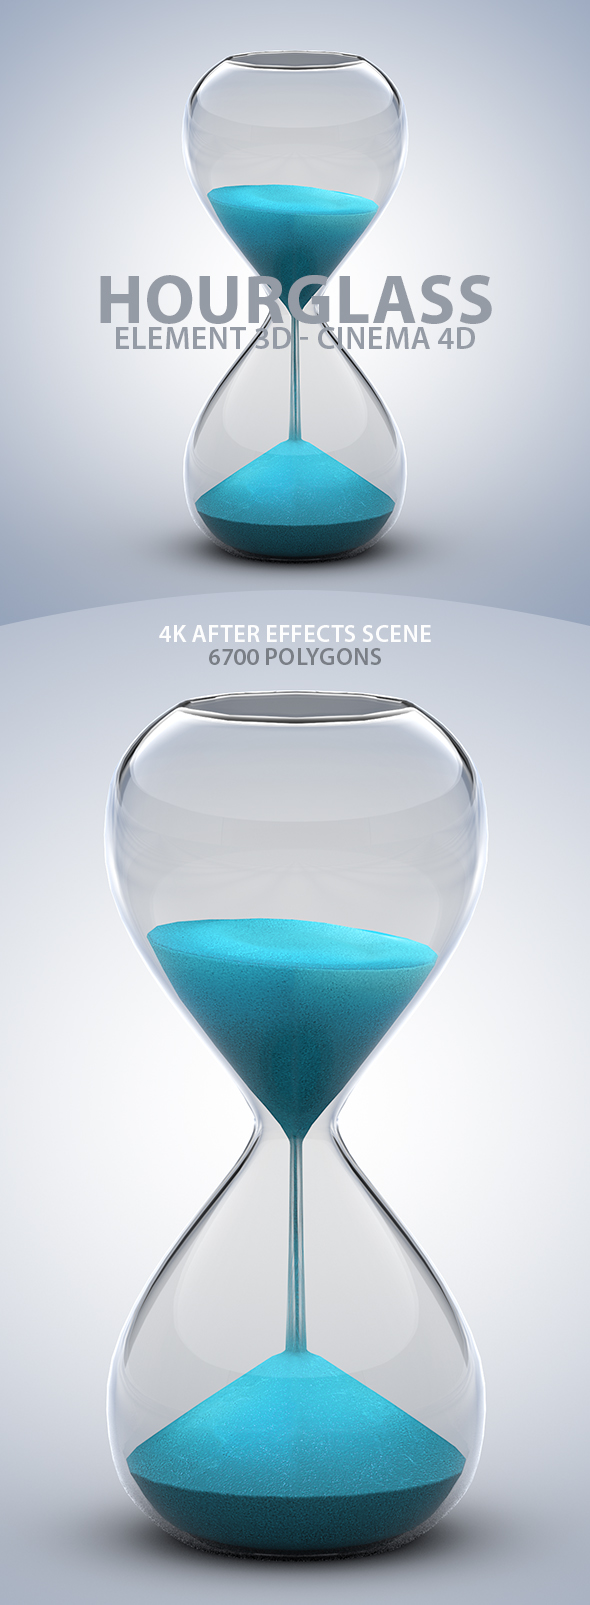 Hourglass 3D Model - 3Docean 33229017